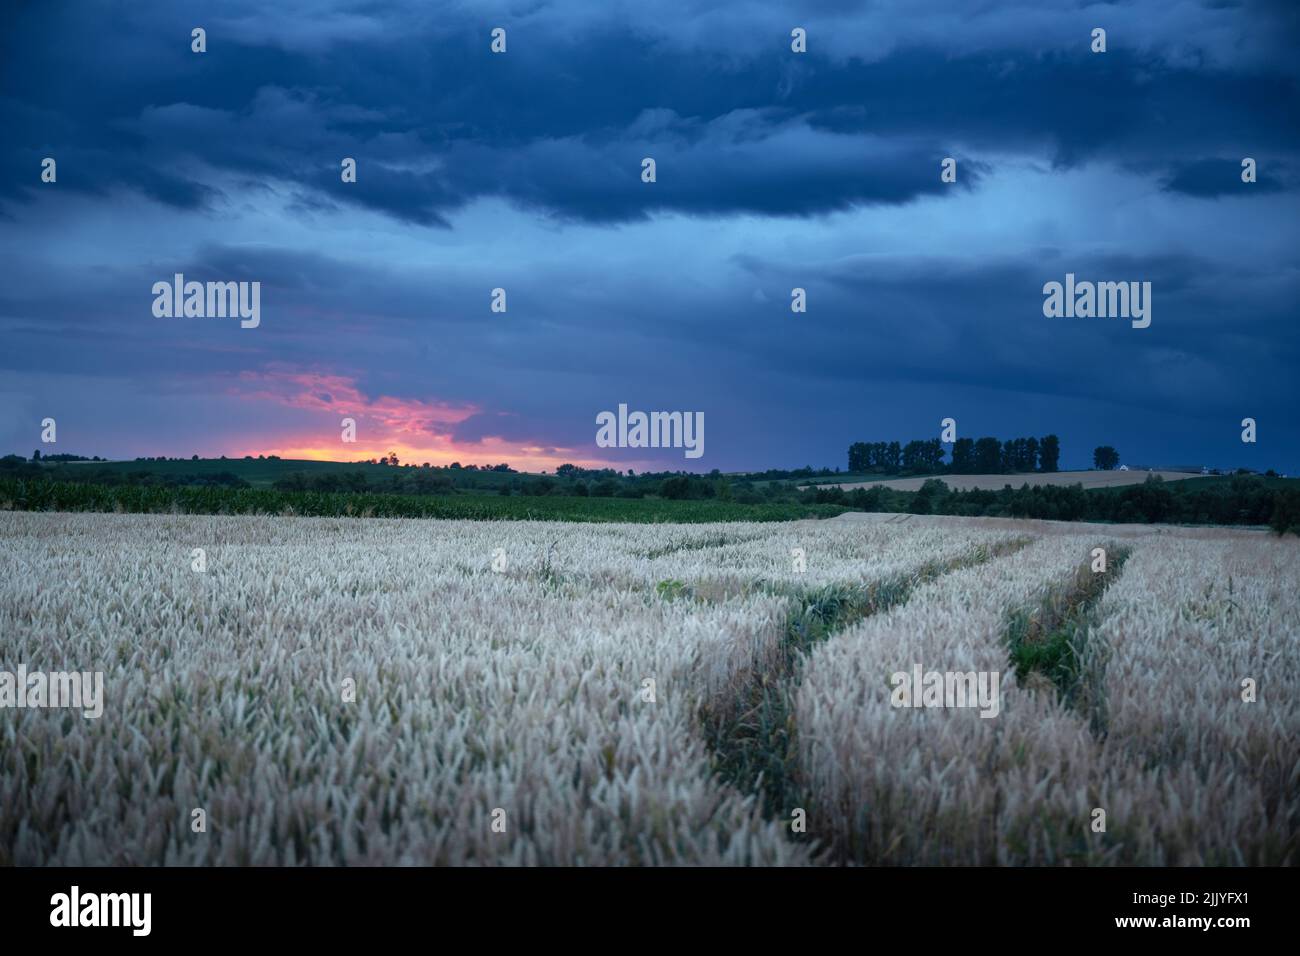 Reife Weizenspikelets auf dem ländlichen Feld vor dem dunklen Abendhimmel mit Regenwolken. Industrie- und Naturlandschaft. Ukraine, Europa Stockfoto